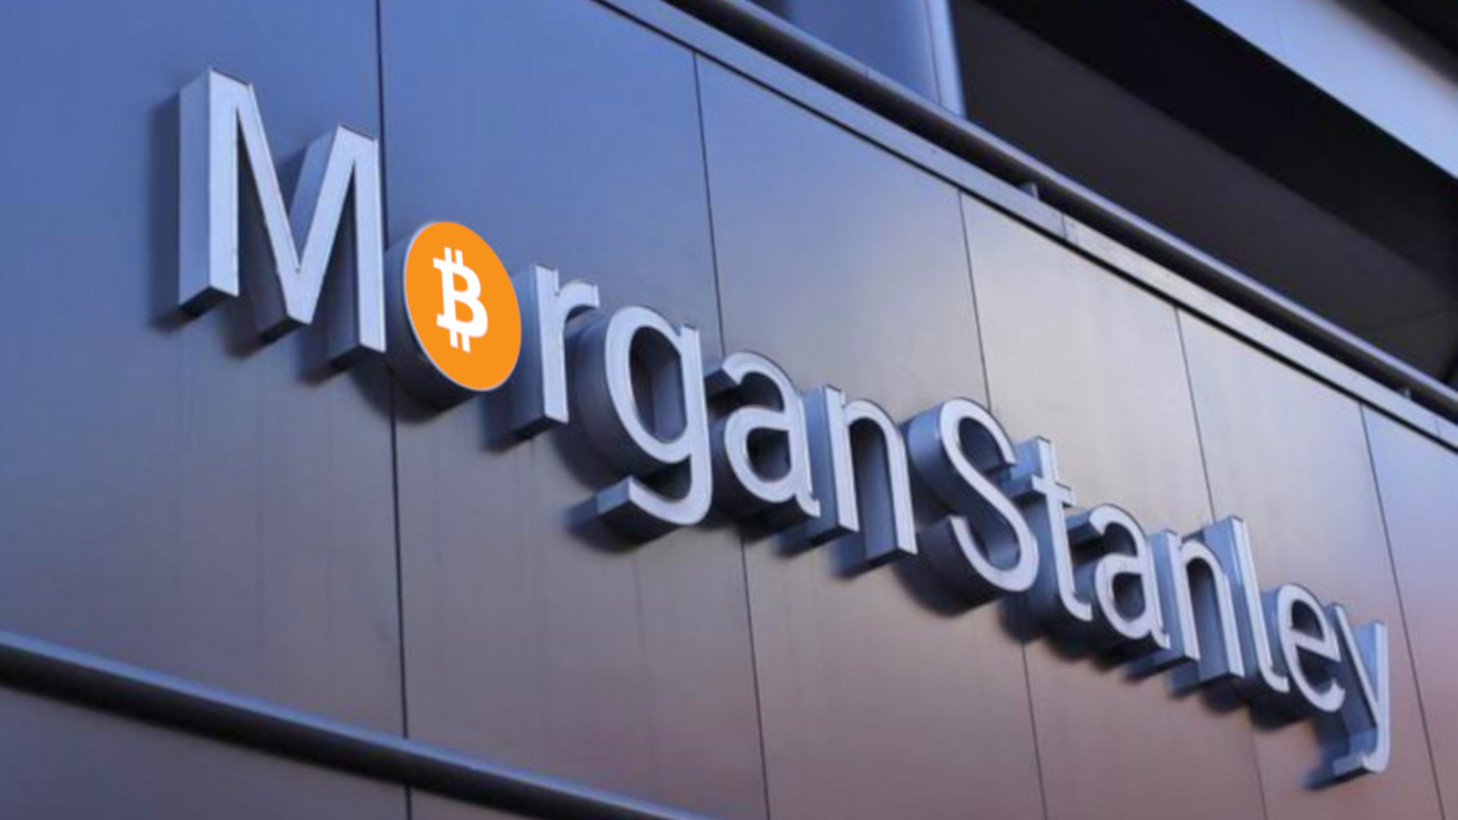 Morgan Stanley Bitcoin ETF